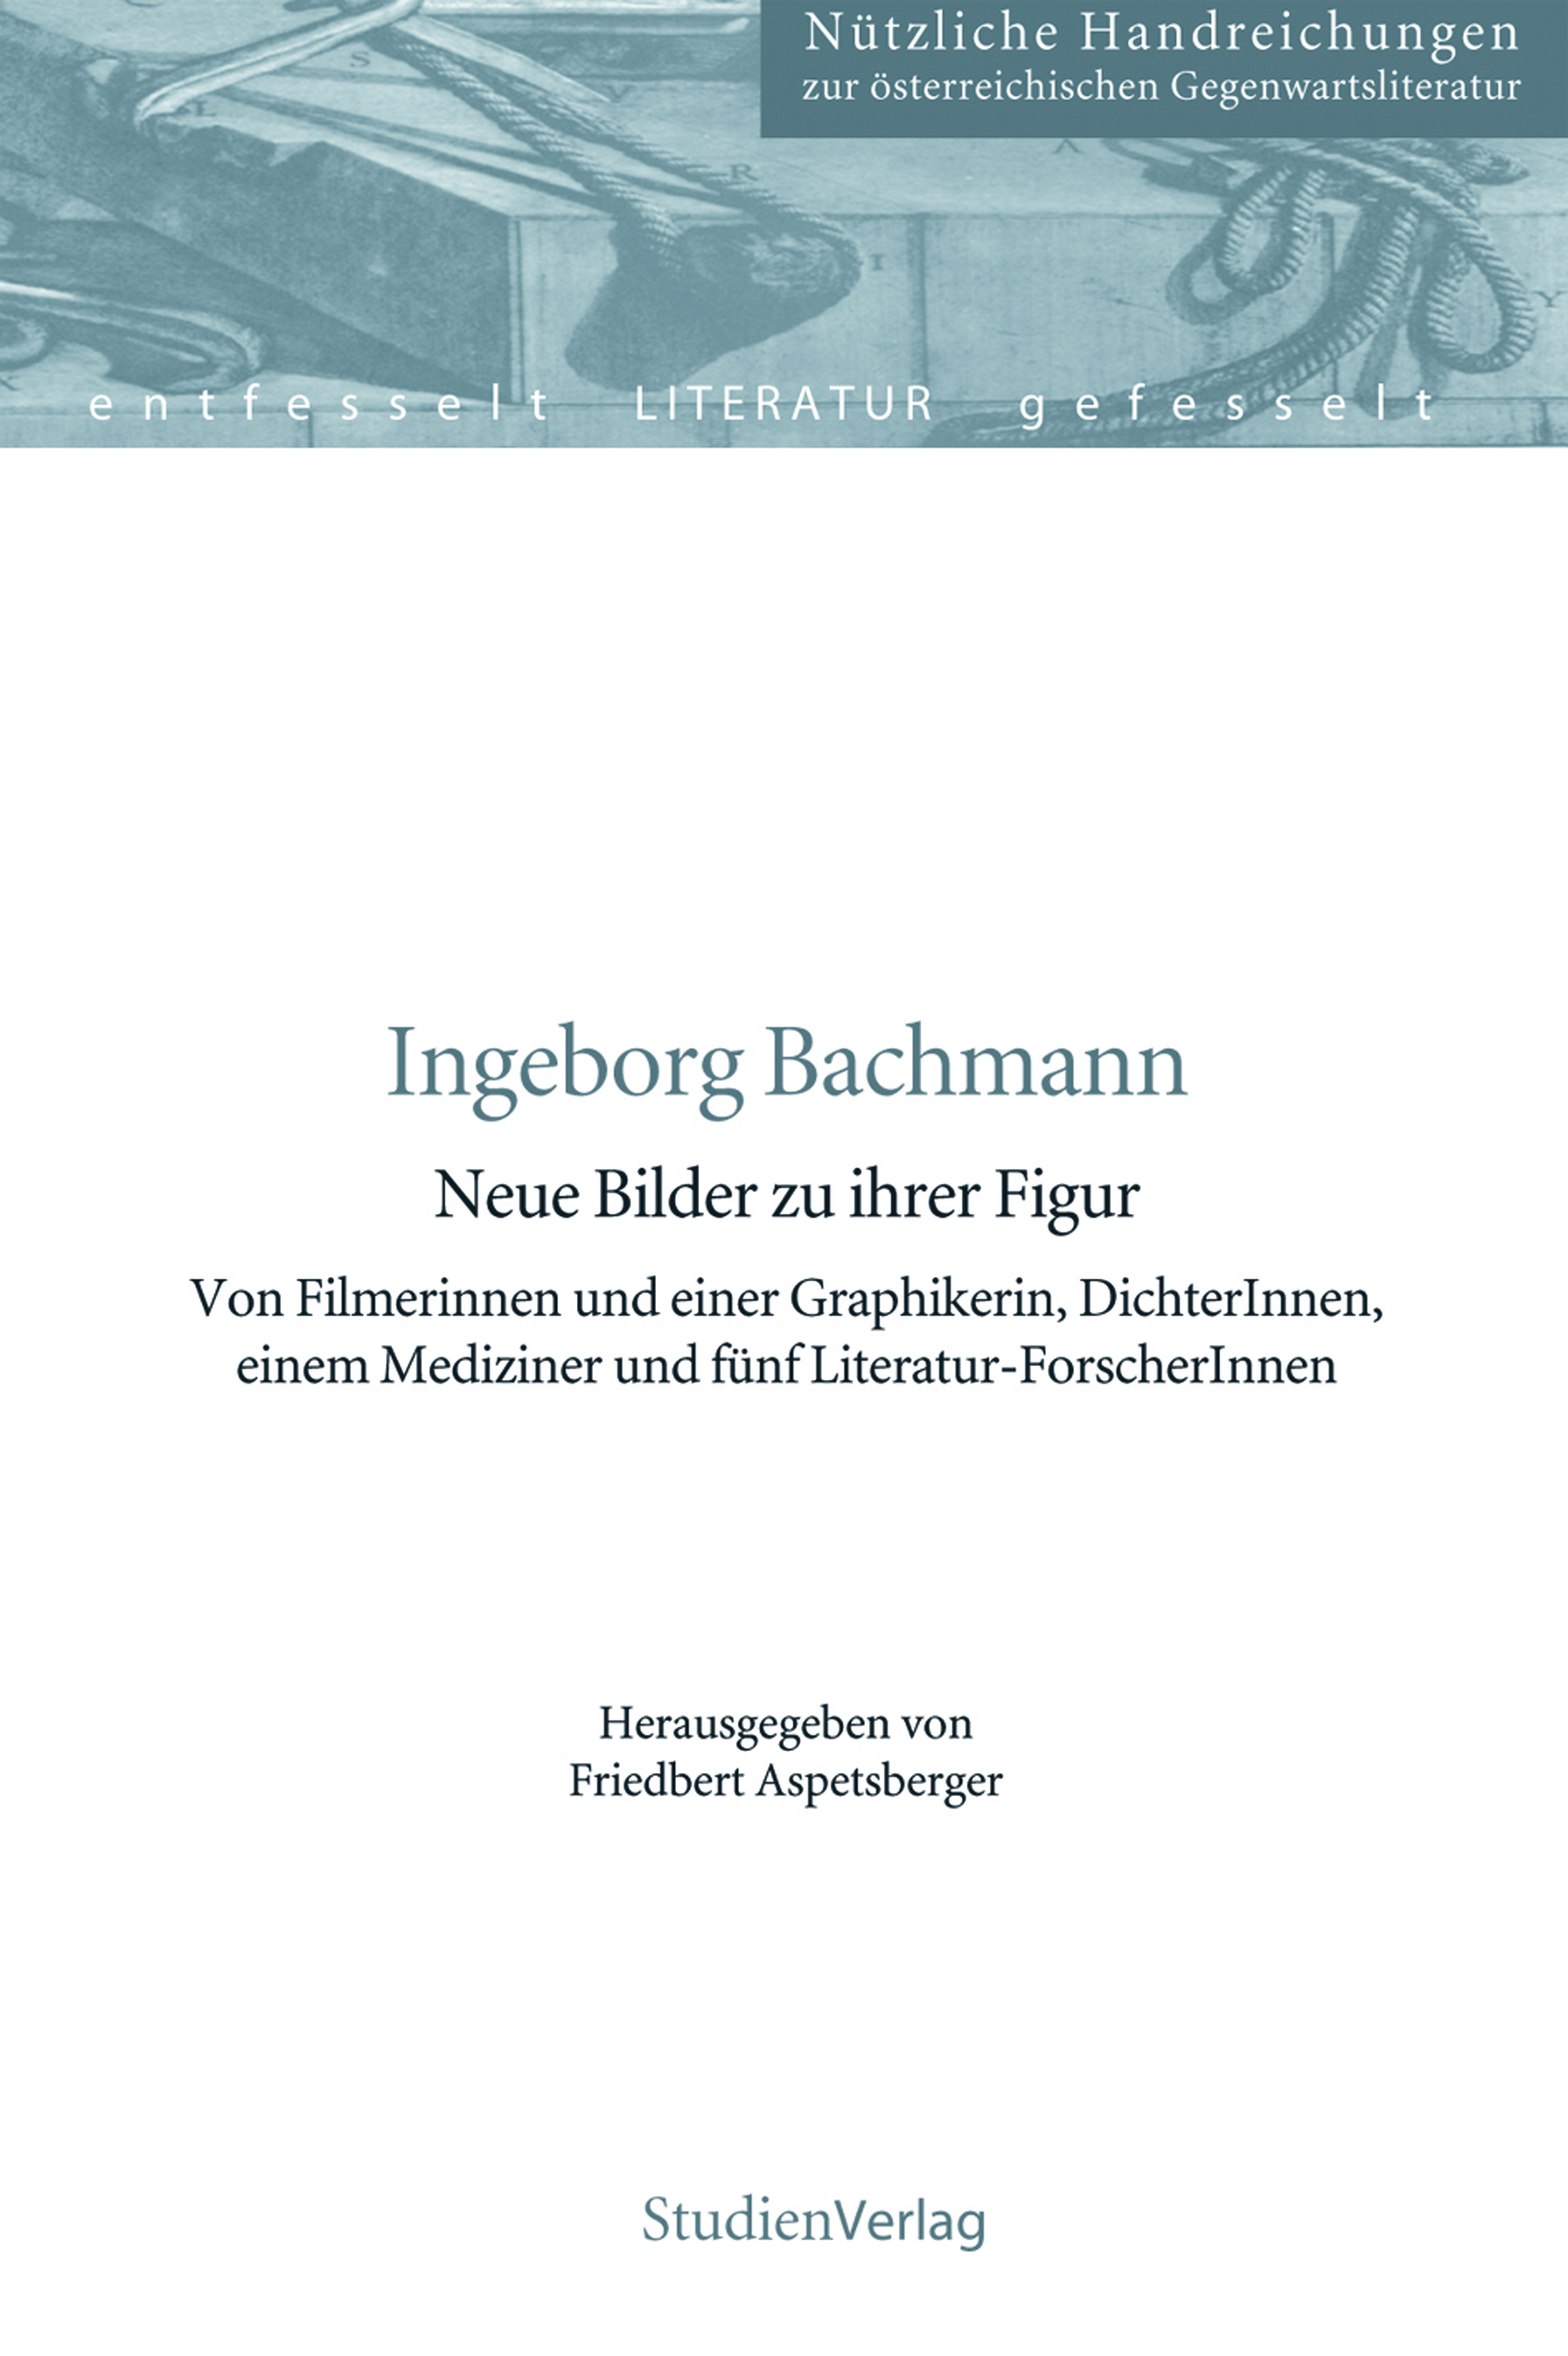 Friedbert Aspetsberger / Ingeborg Bachmann - Friedbert Aspetsberger